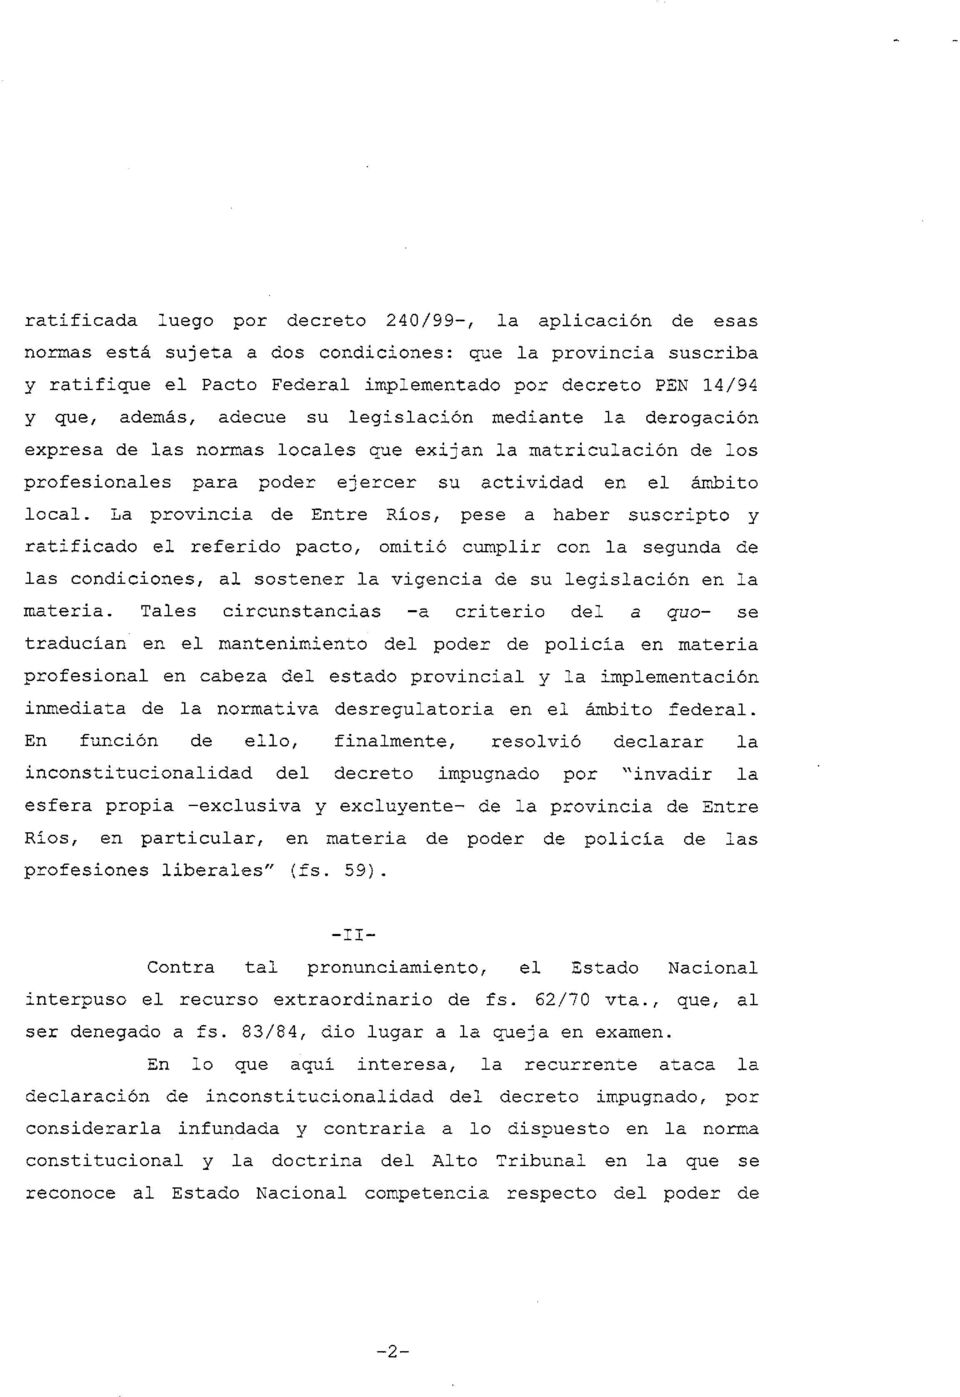 La provincia de Entre Rios, pese a haber suscripto y ratificado el referido pacto, omitió cumplir con la segunda de las condiciones, al sostener la vigencia de su legislación en la materia.